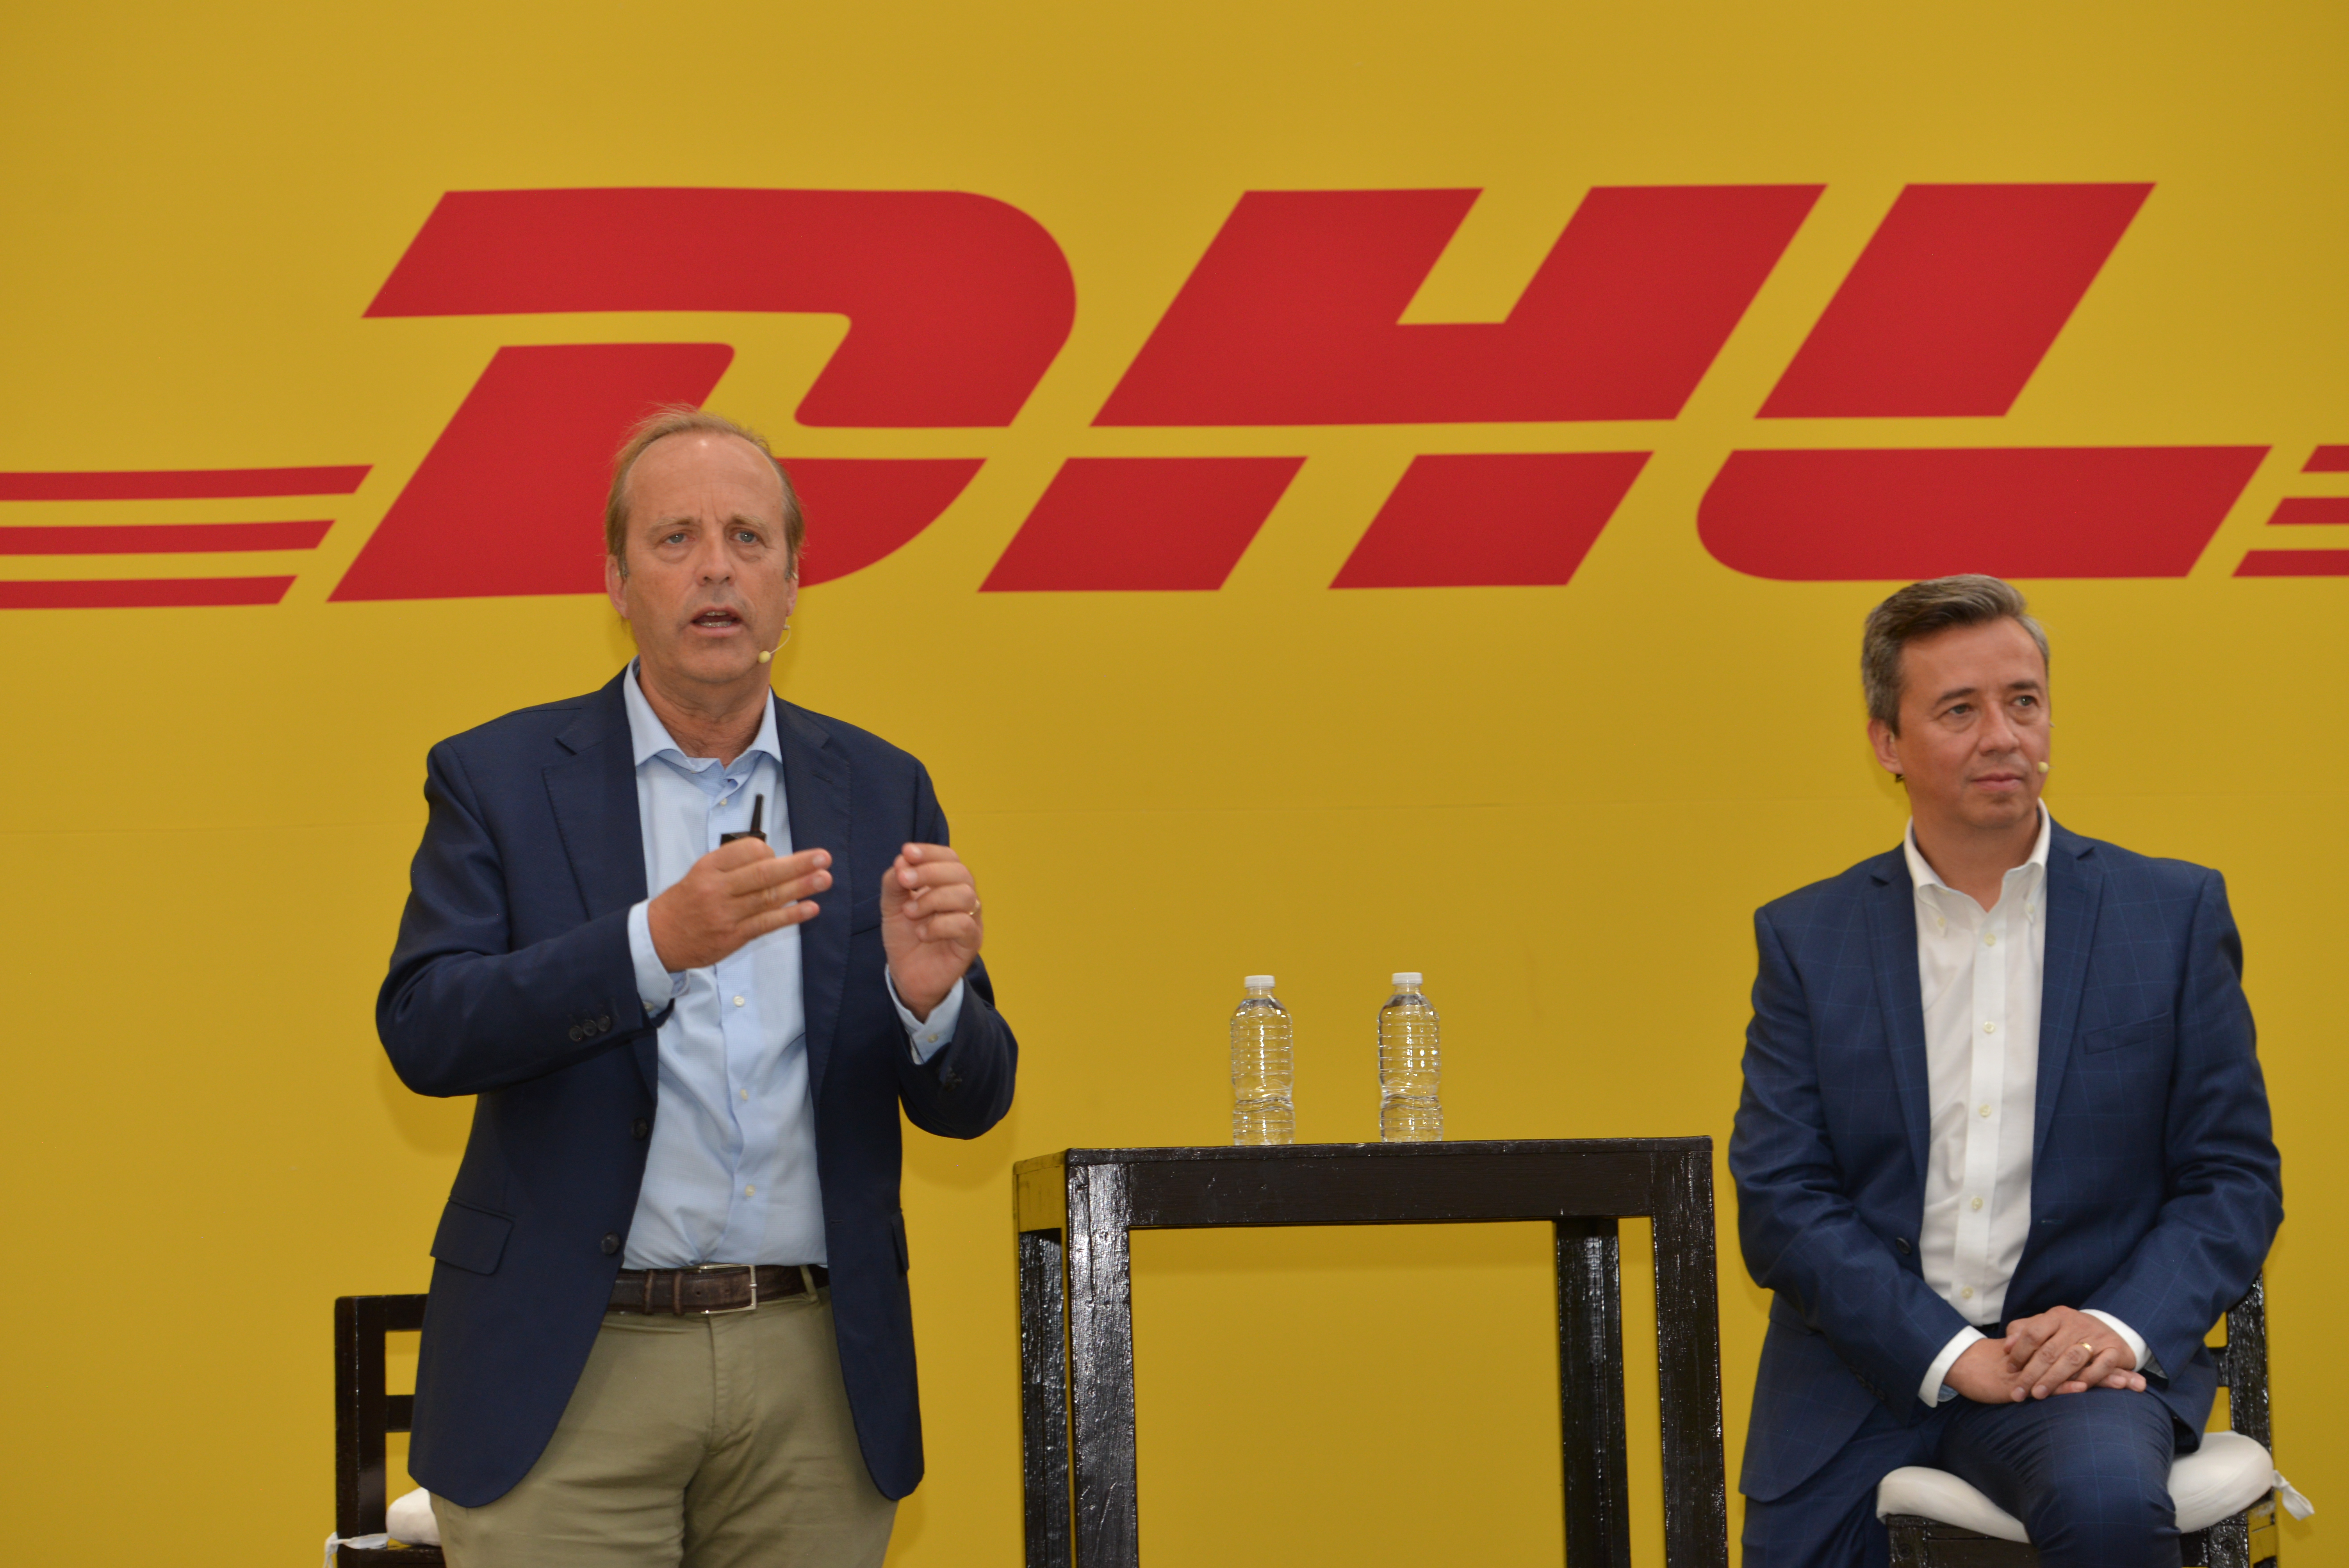  América Latina em foco: DHL Supply Chain investe € 500 milhões na região